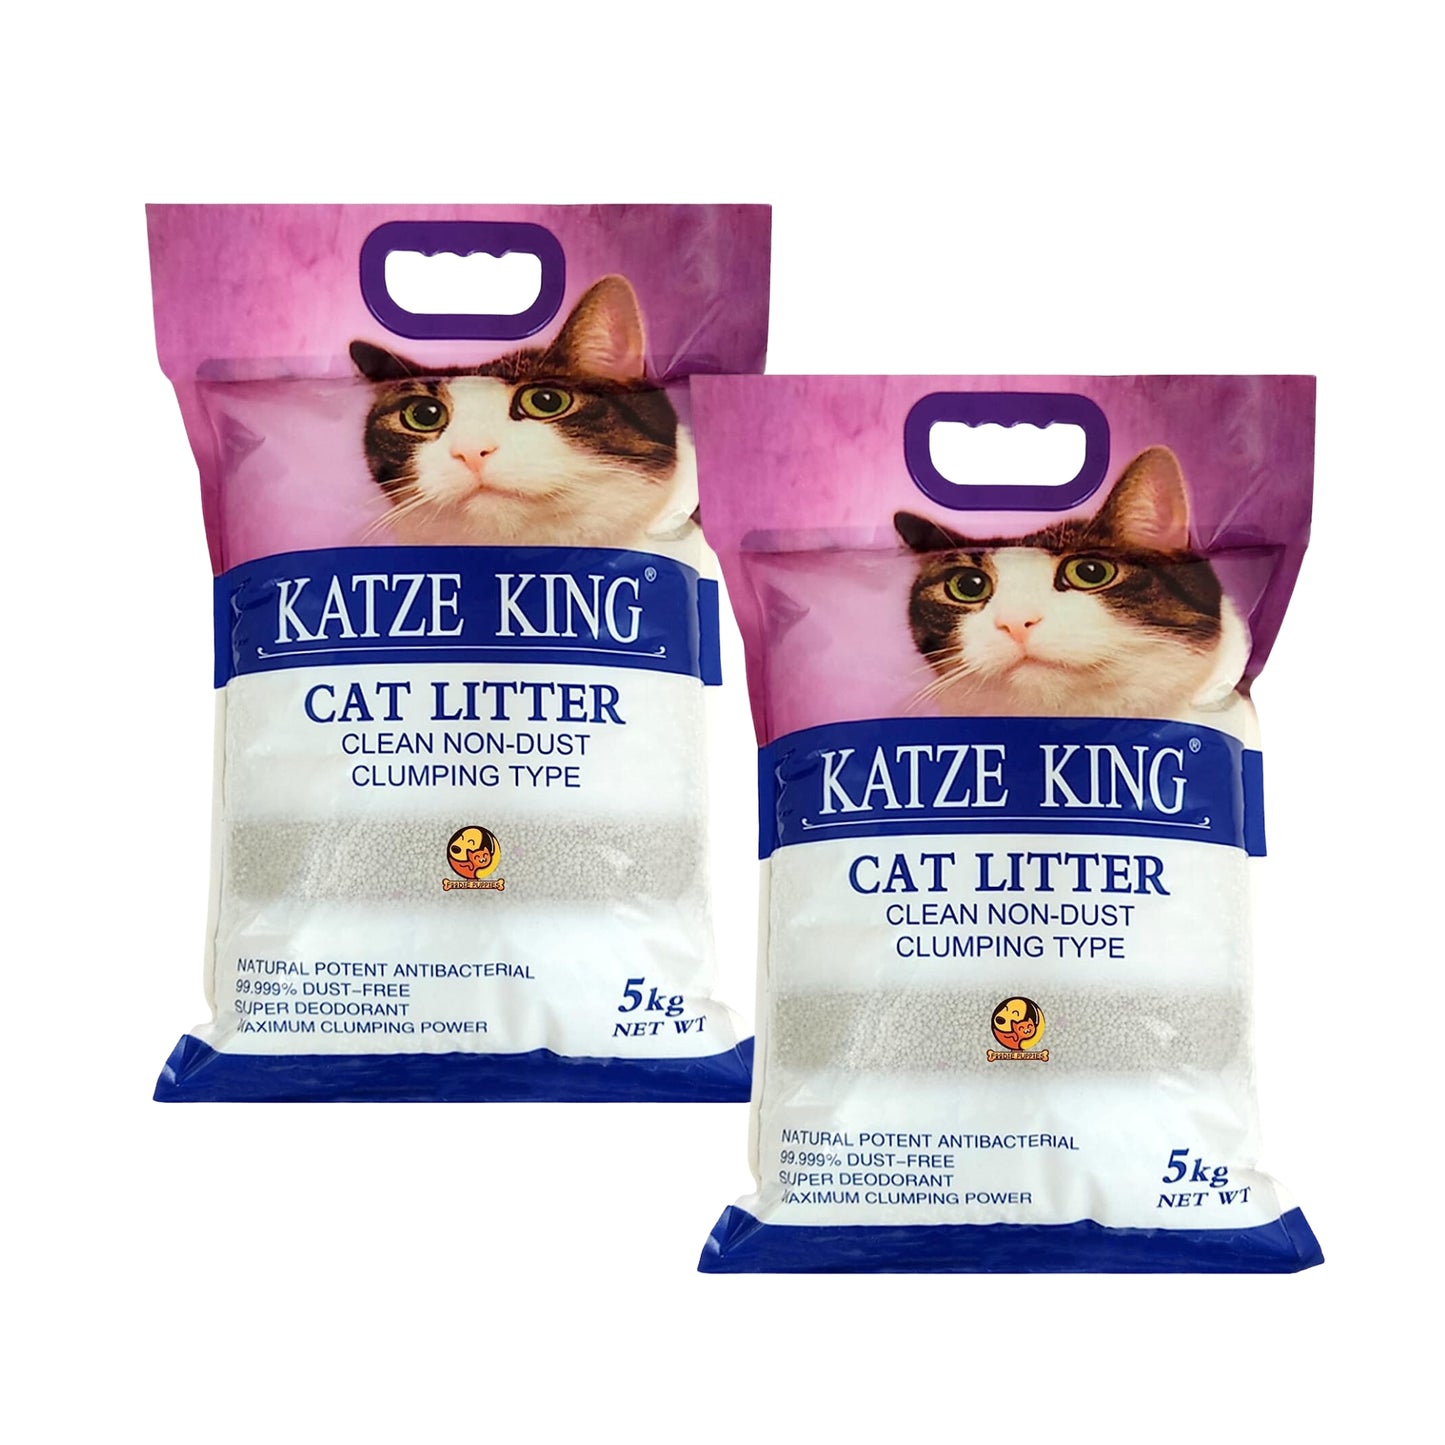 Katze King Strong Apple Fragrance Cat Litter Sand, 5Kg - Pack of 2